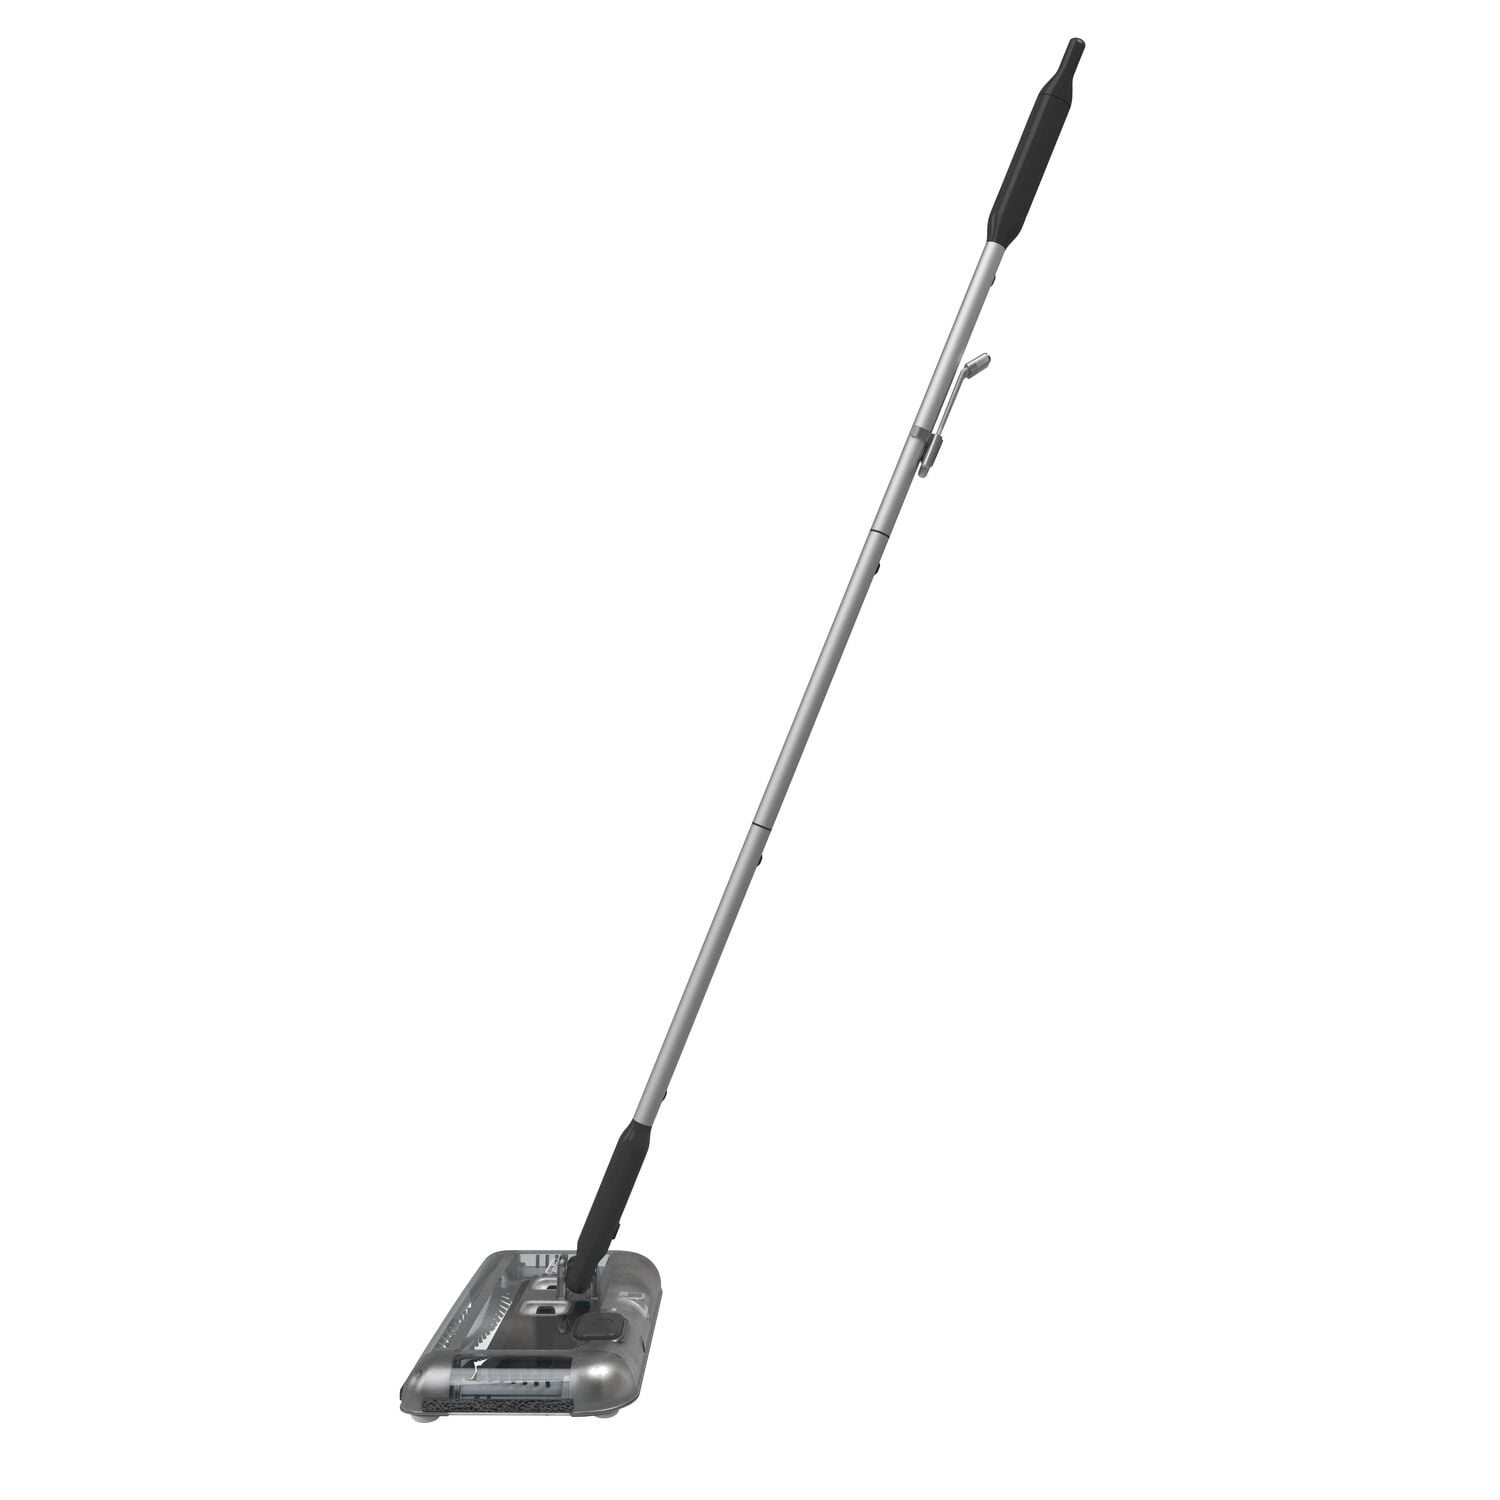 Powered floor sweeper PSA215B / 7,2V, Black+Decker - Private